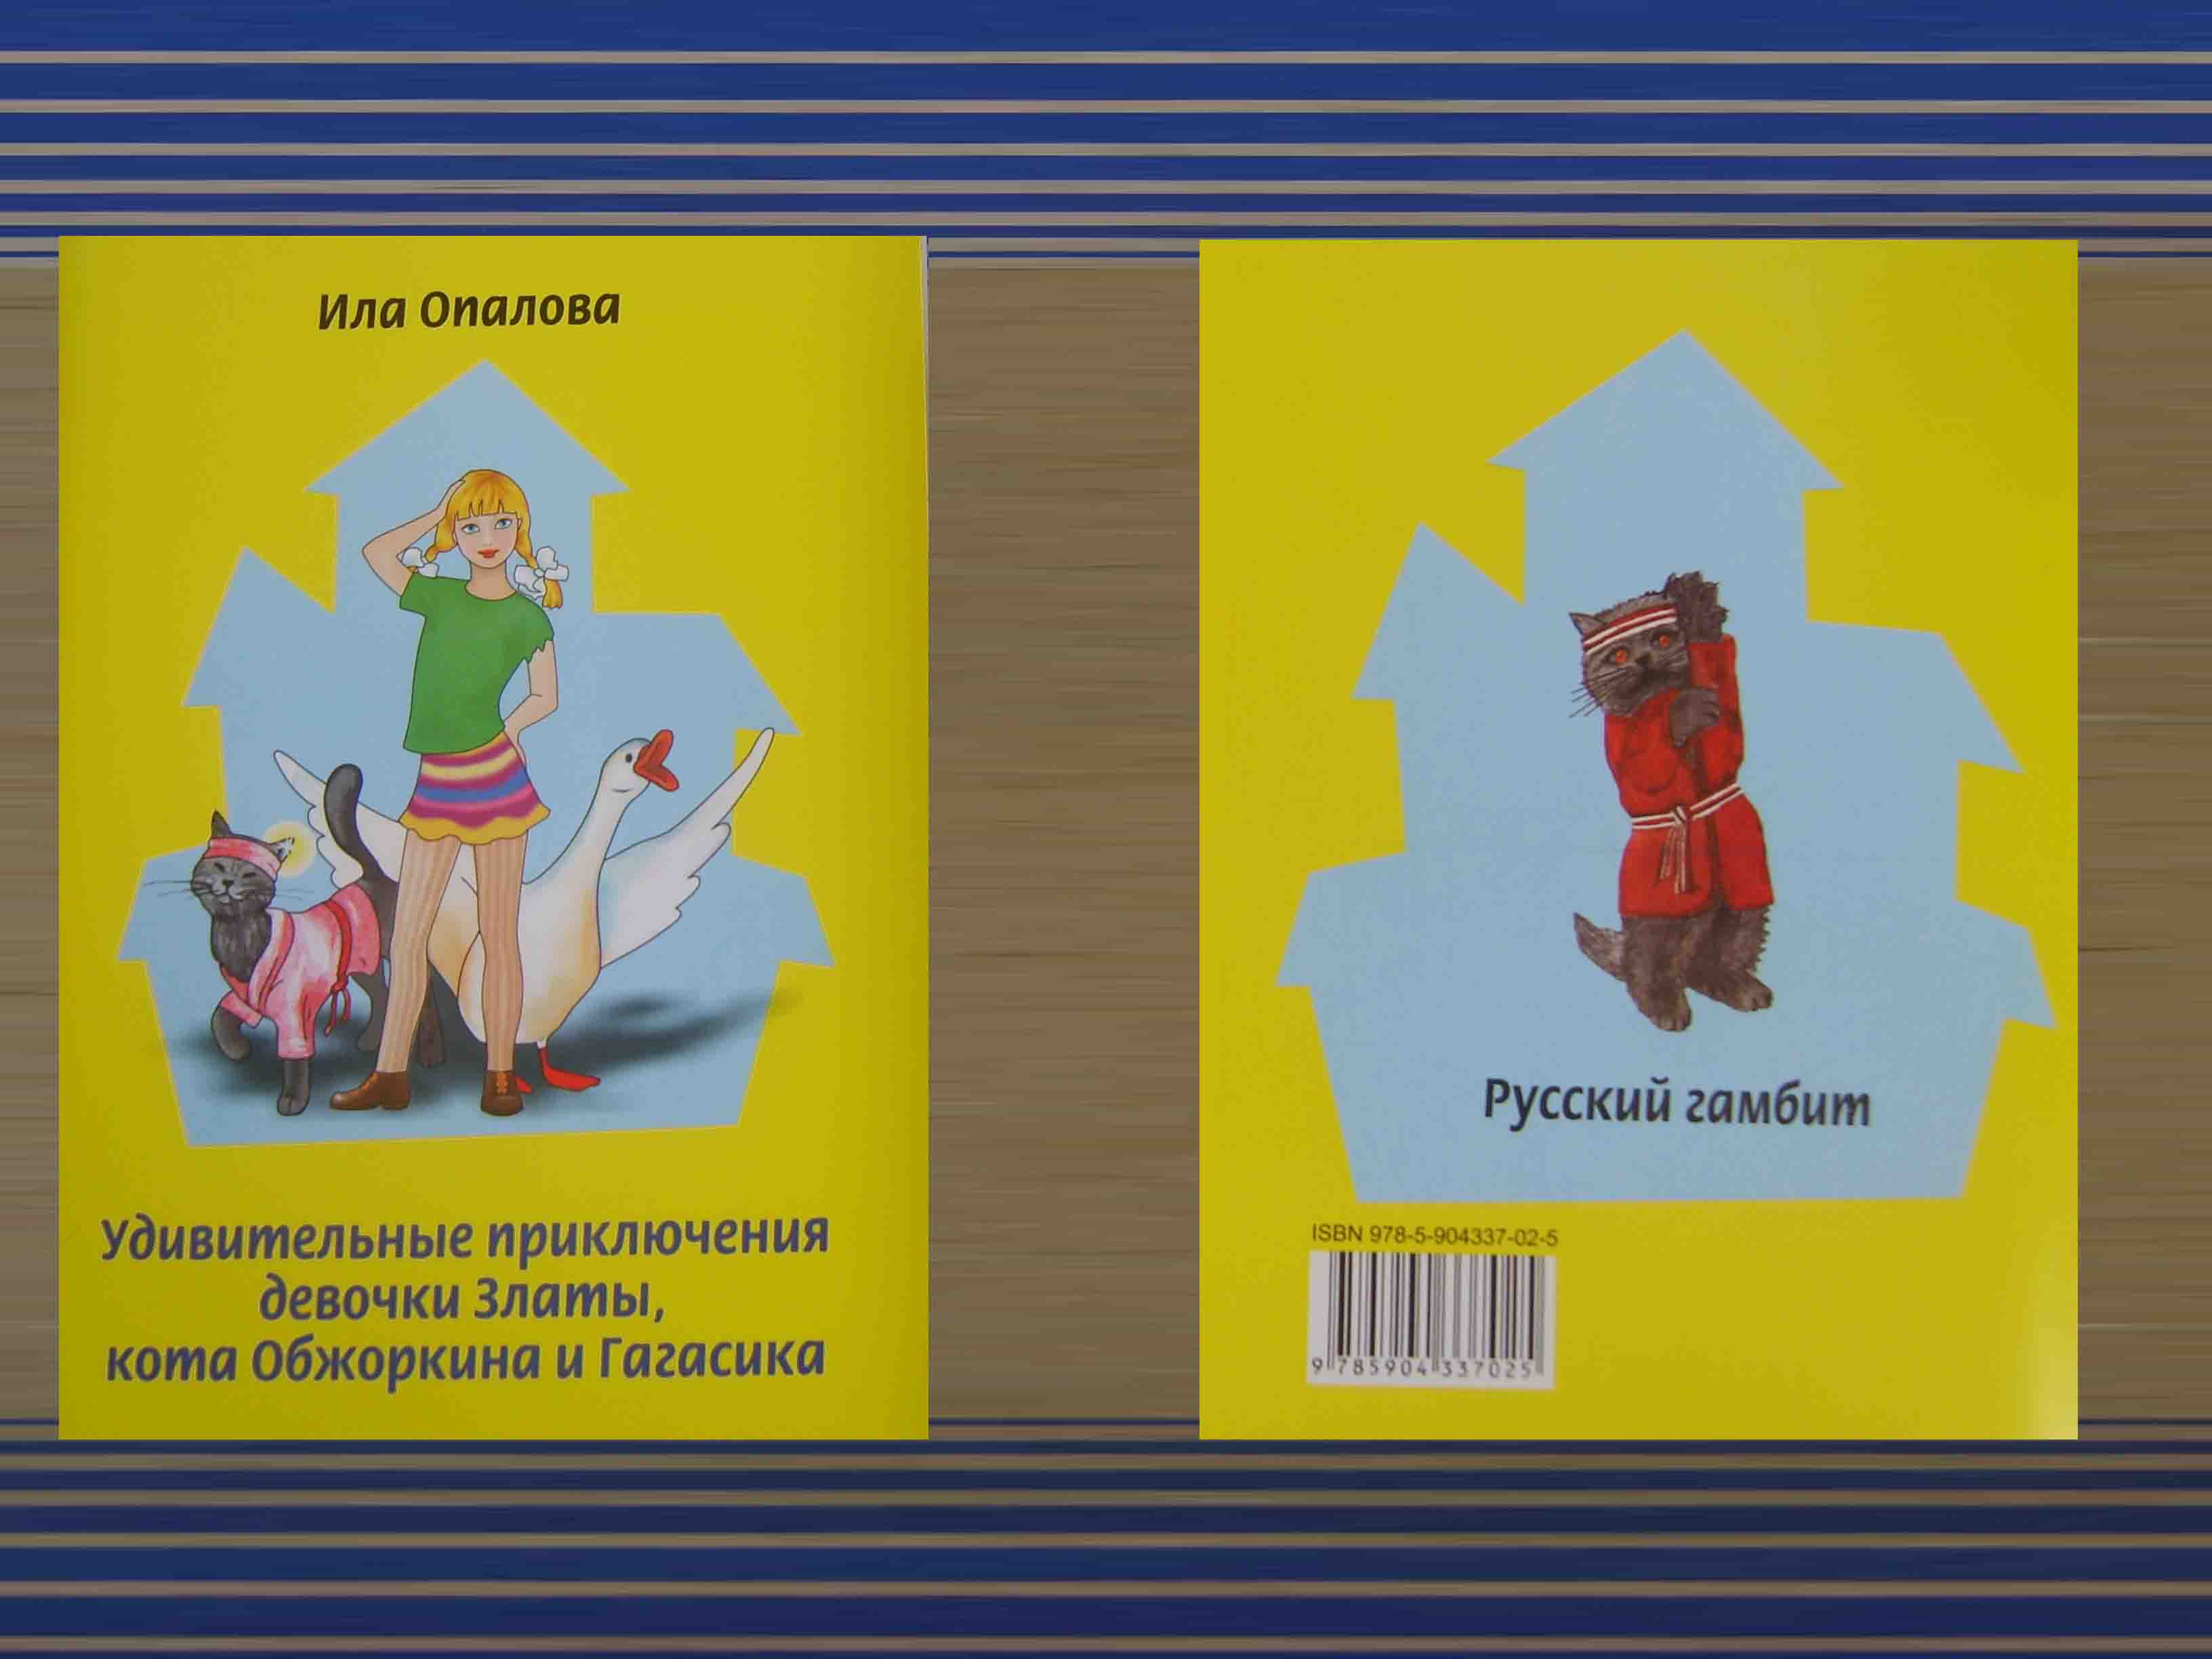 напечатанная детская книжка издательством "Русский гамбит"